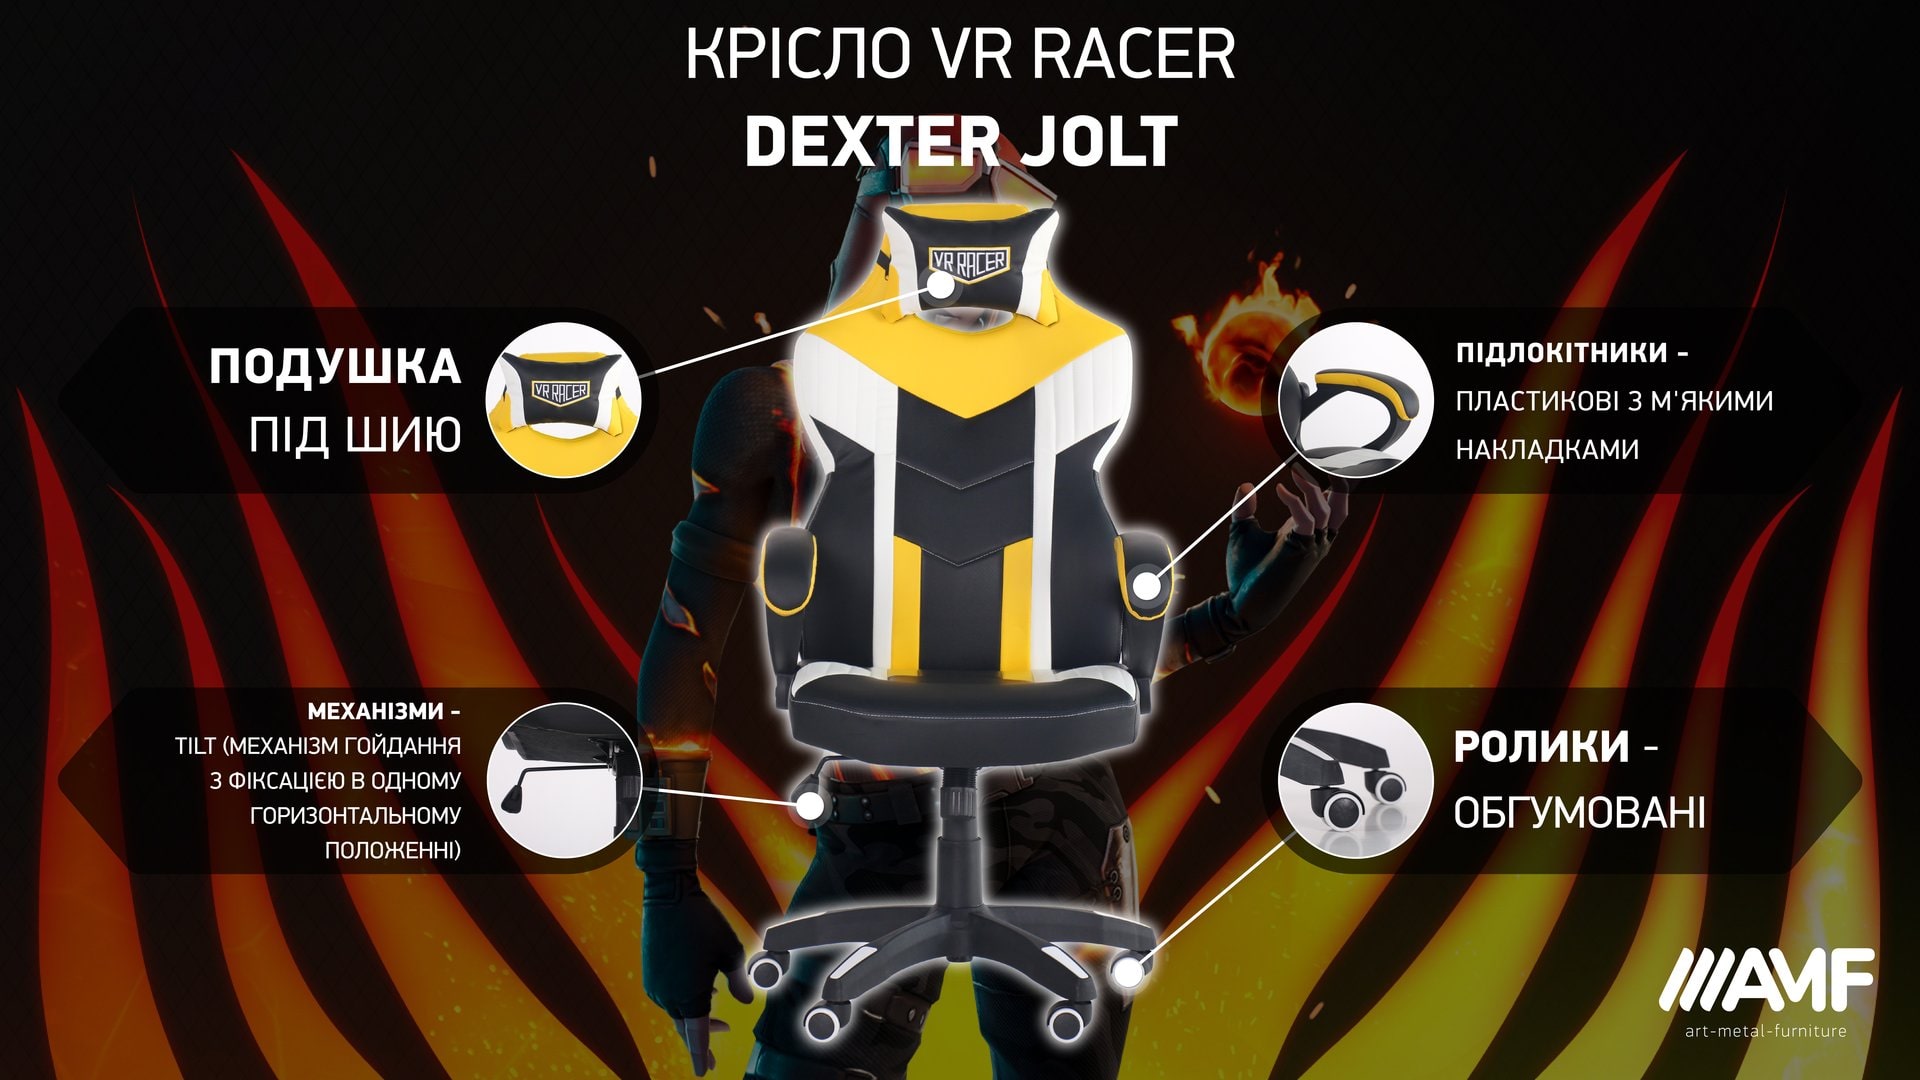 Кресло VR Racer Dexter Jolt описание